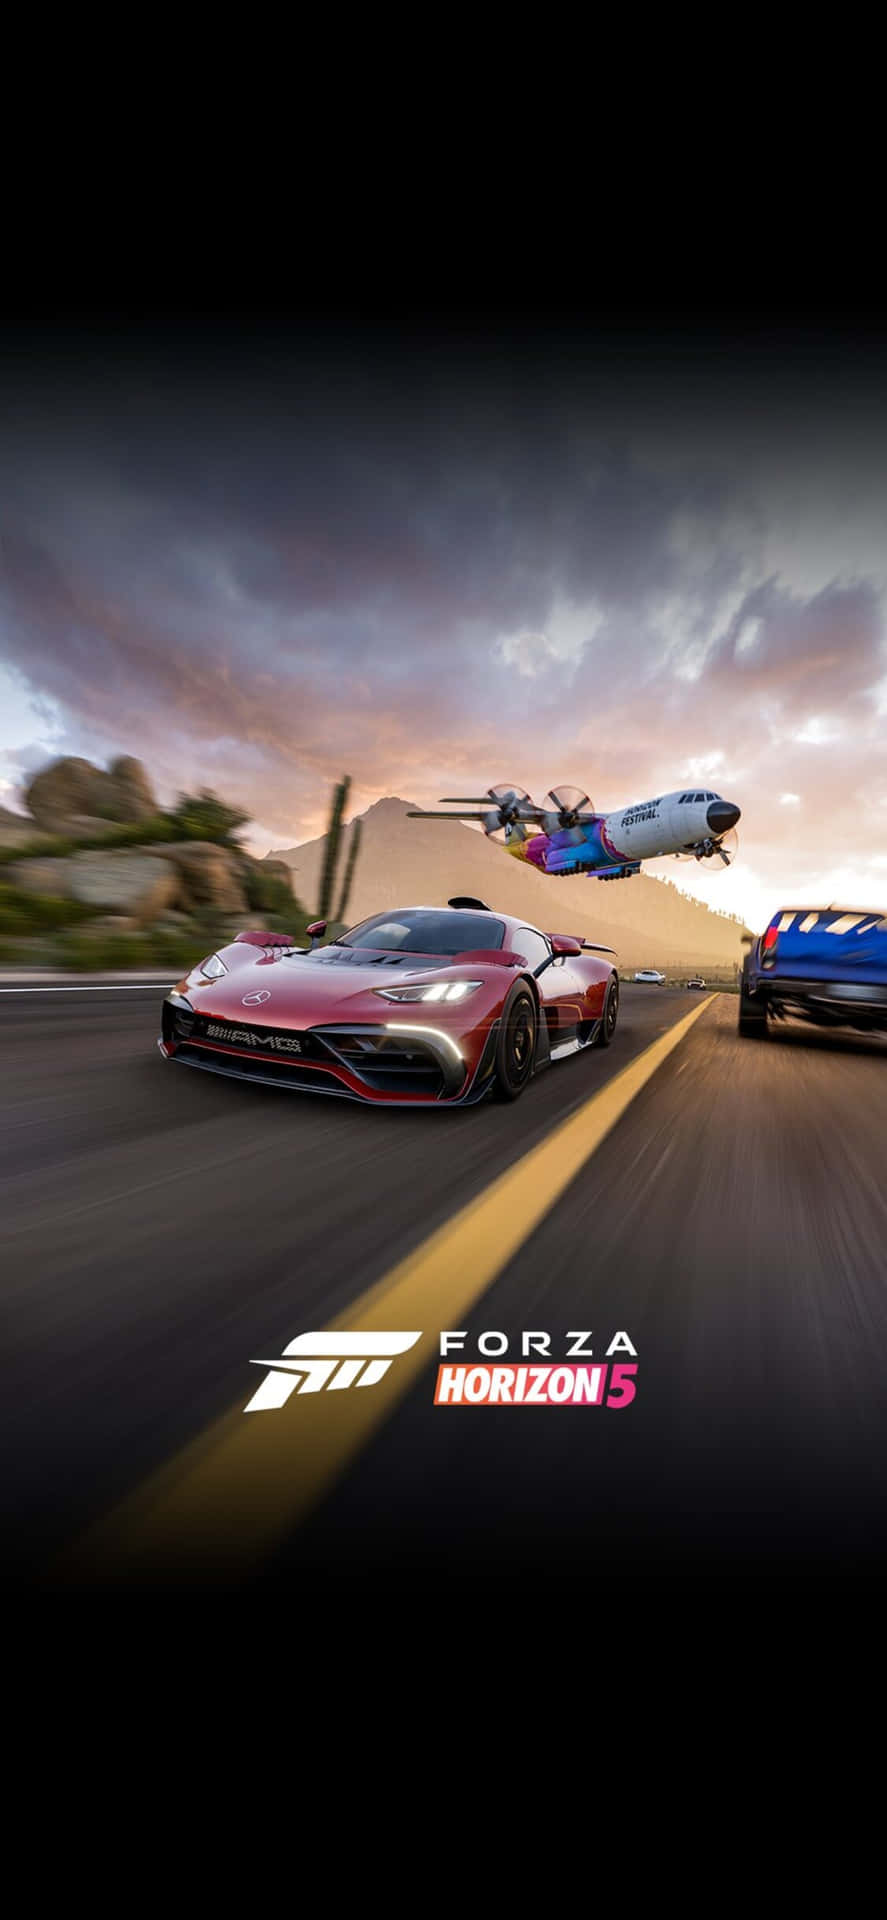 Flygplaniphone X Forza Motorsport 7 Bakgrundsbild.